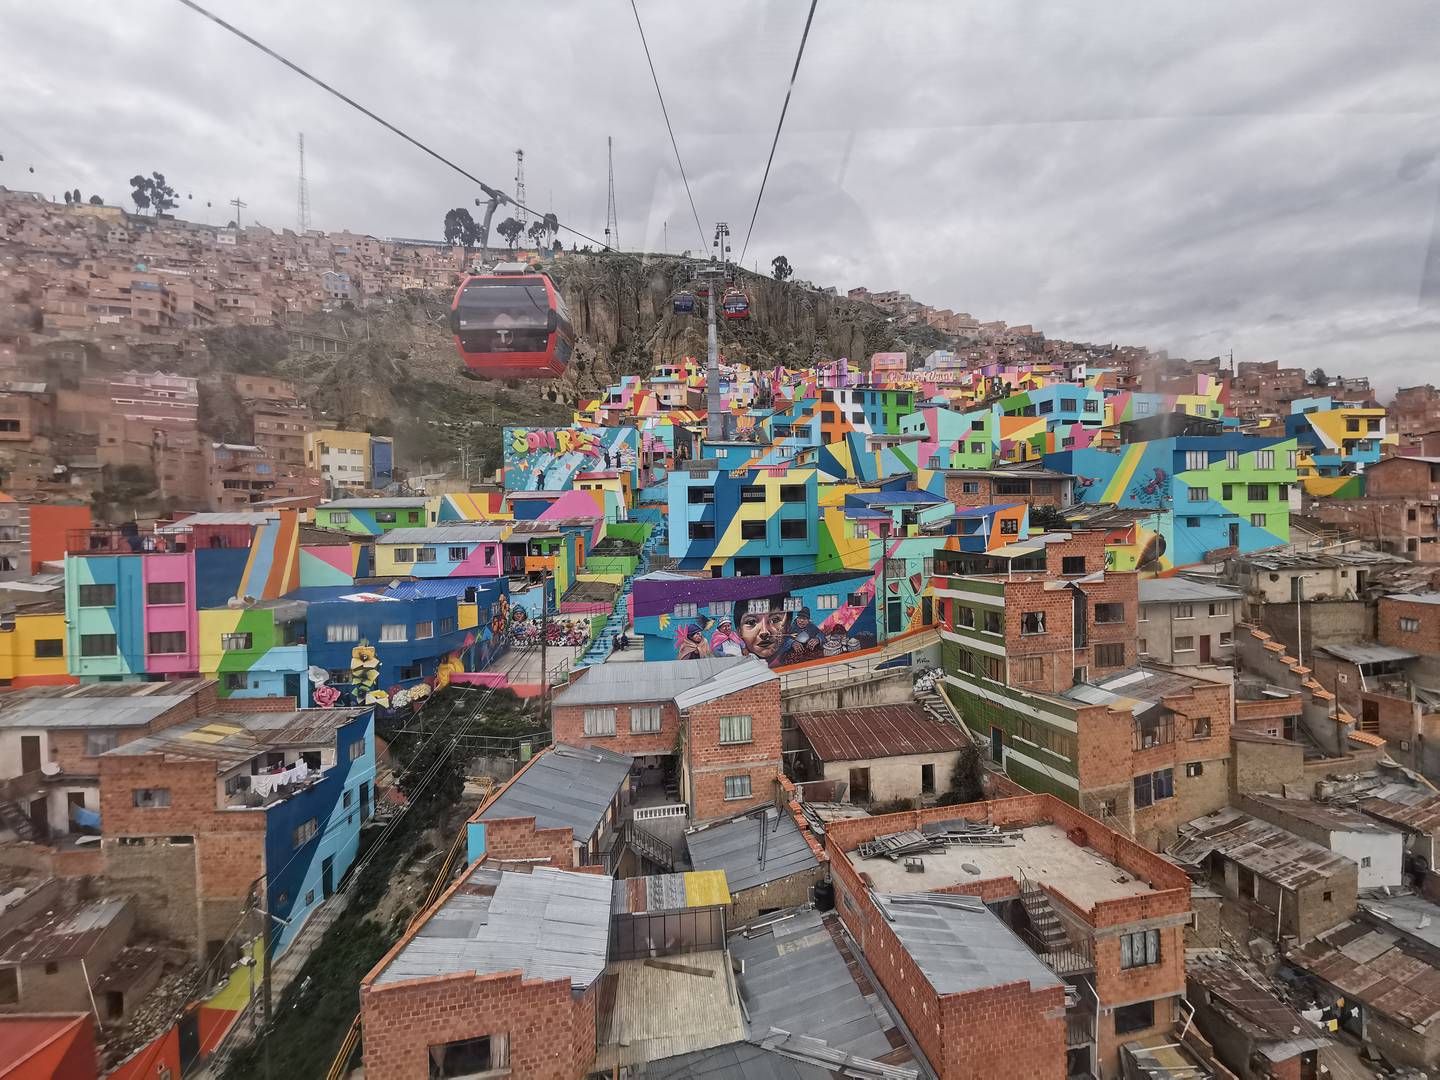 Las vistas desde el teleférico de La Paz son uno de los atractivos de la llamada "ciudad maravilla".